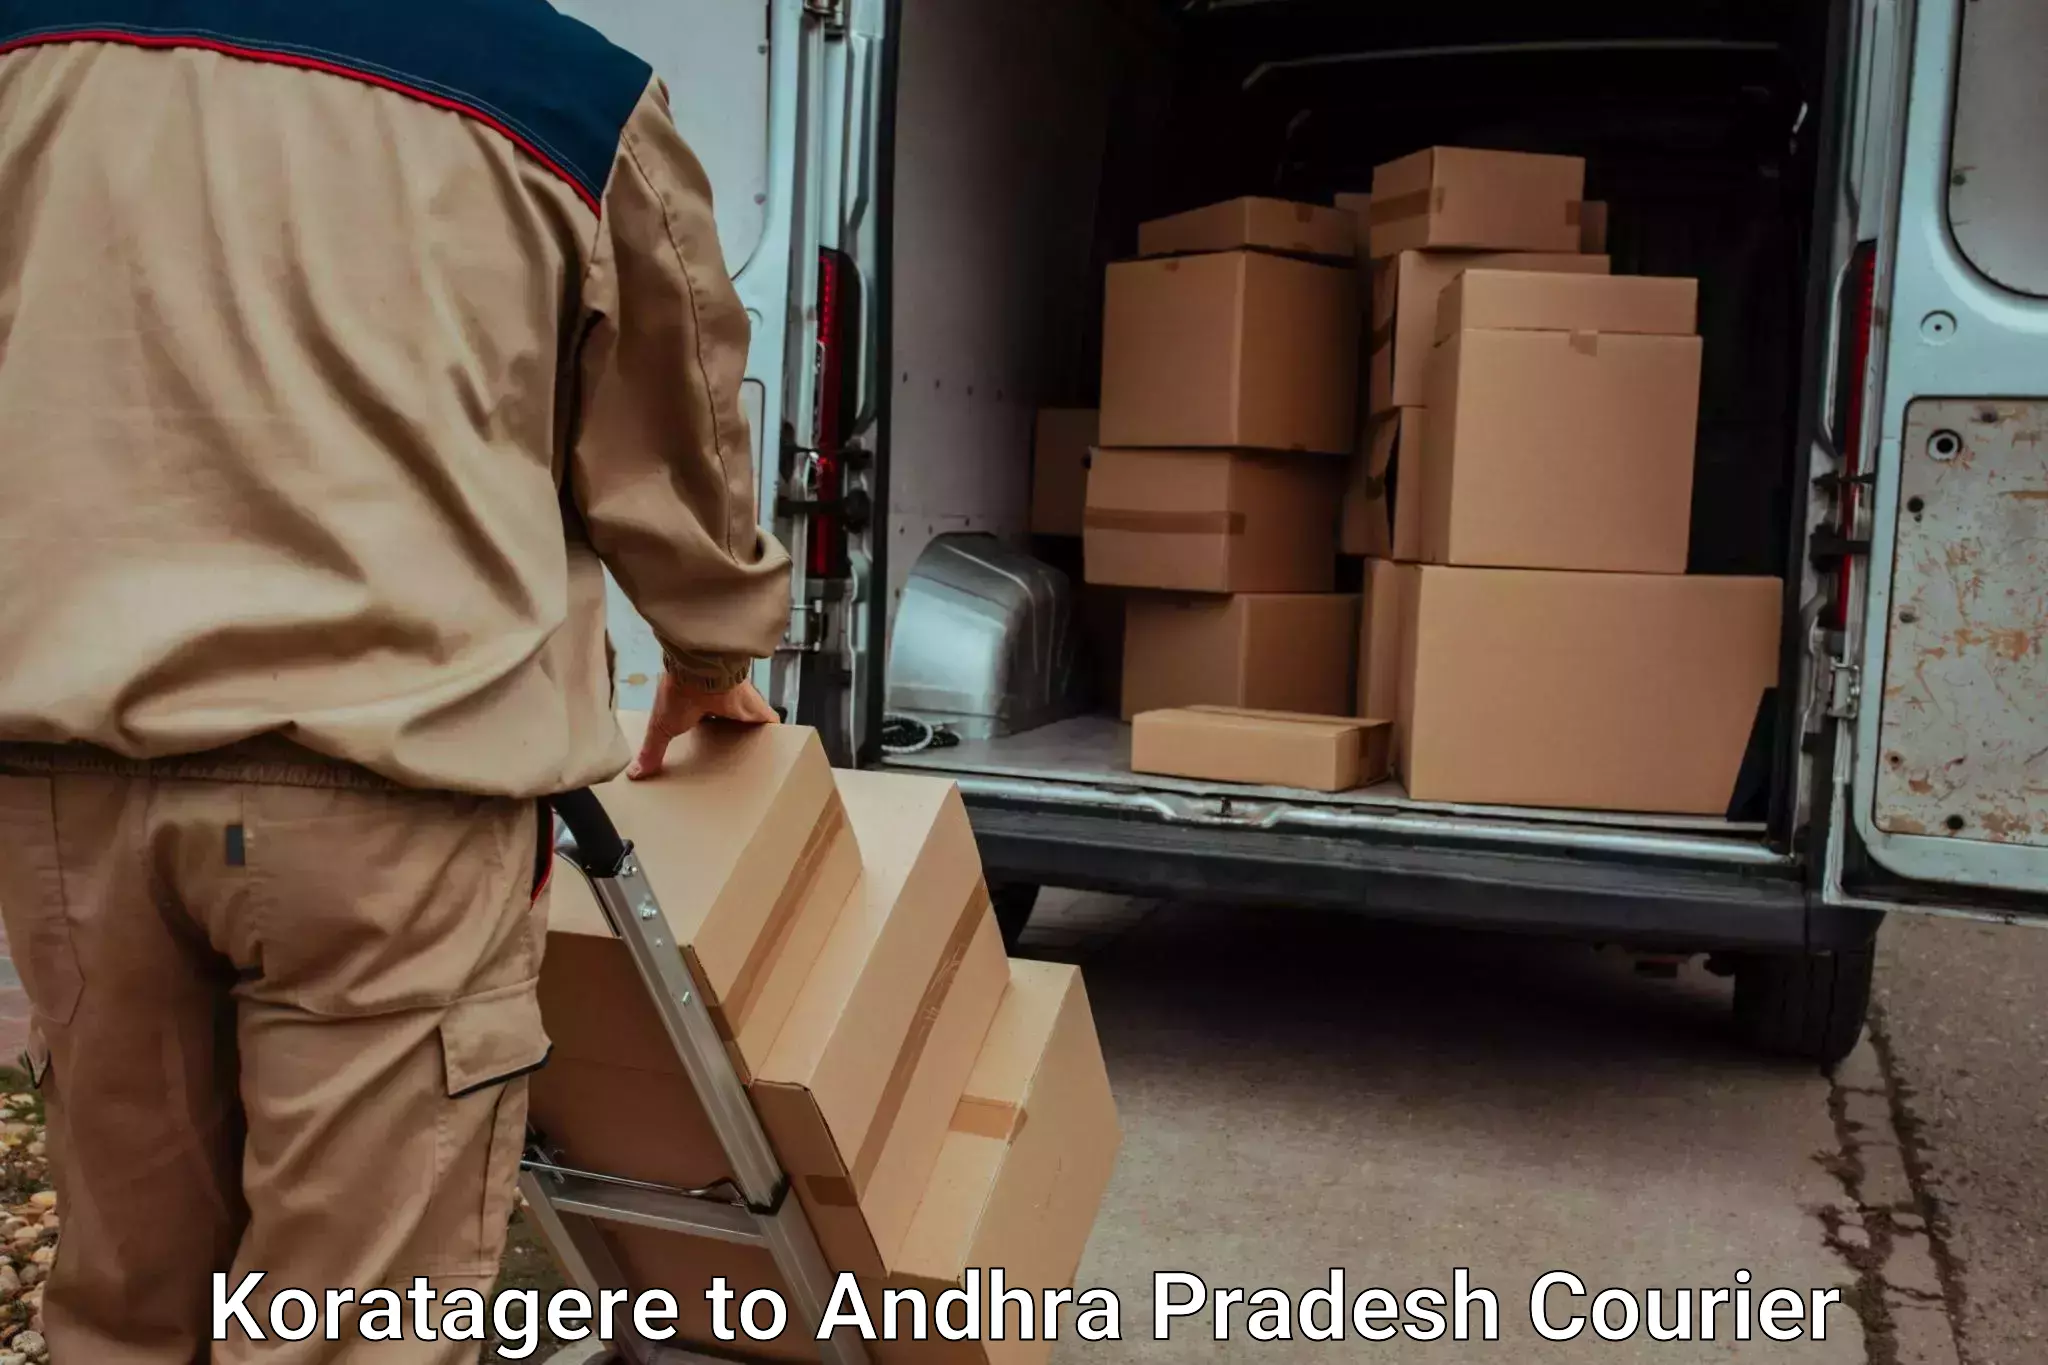 Efficient luggage delivery Koratagere to Cumbum Prakasam